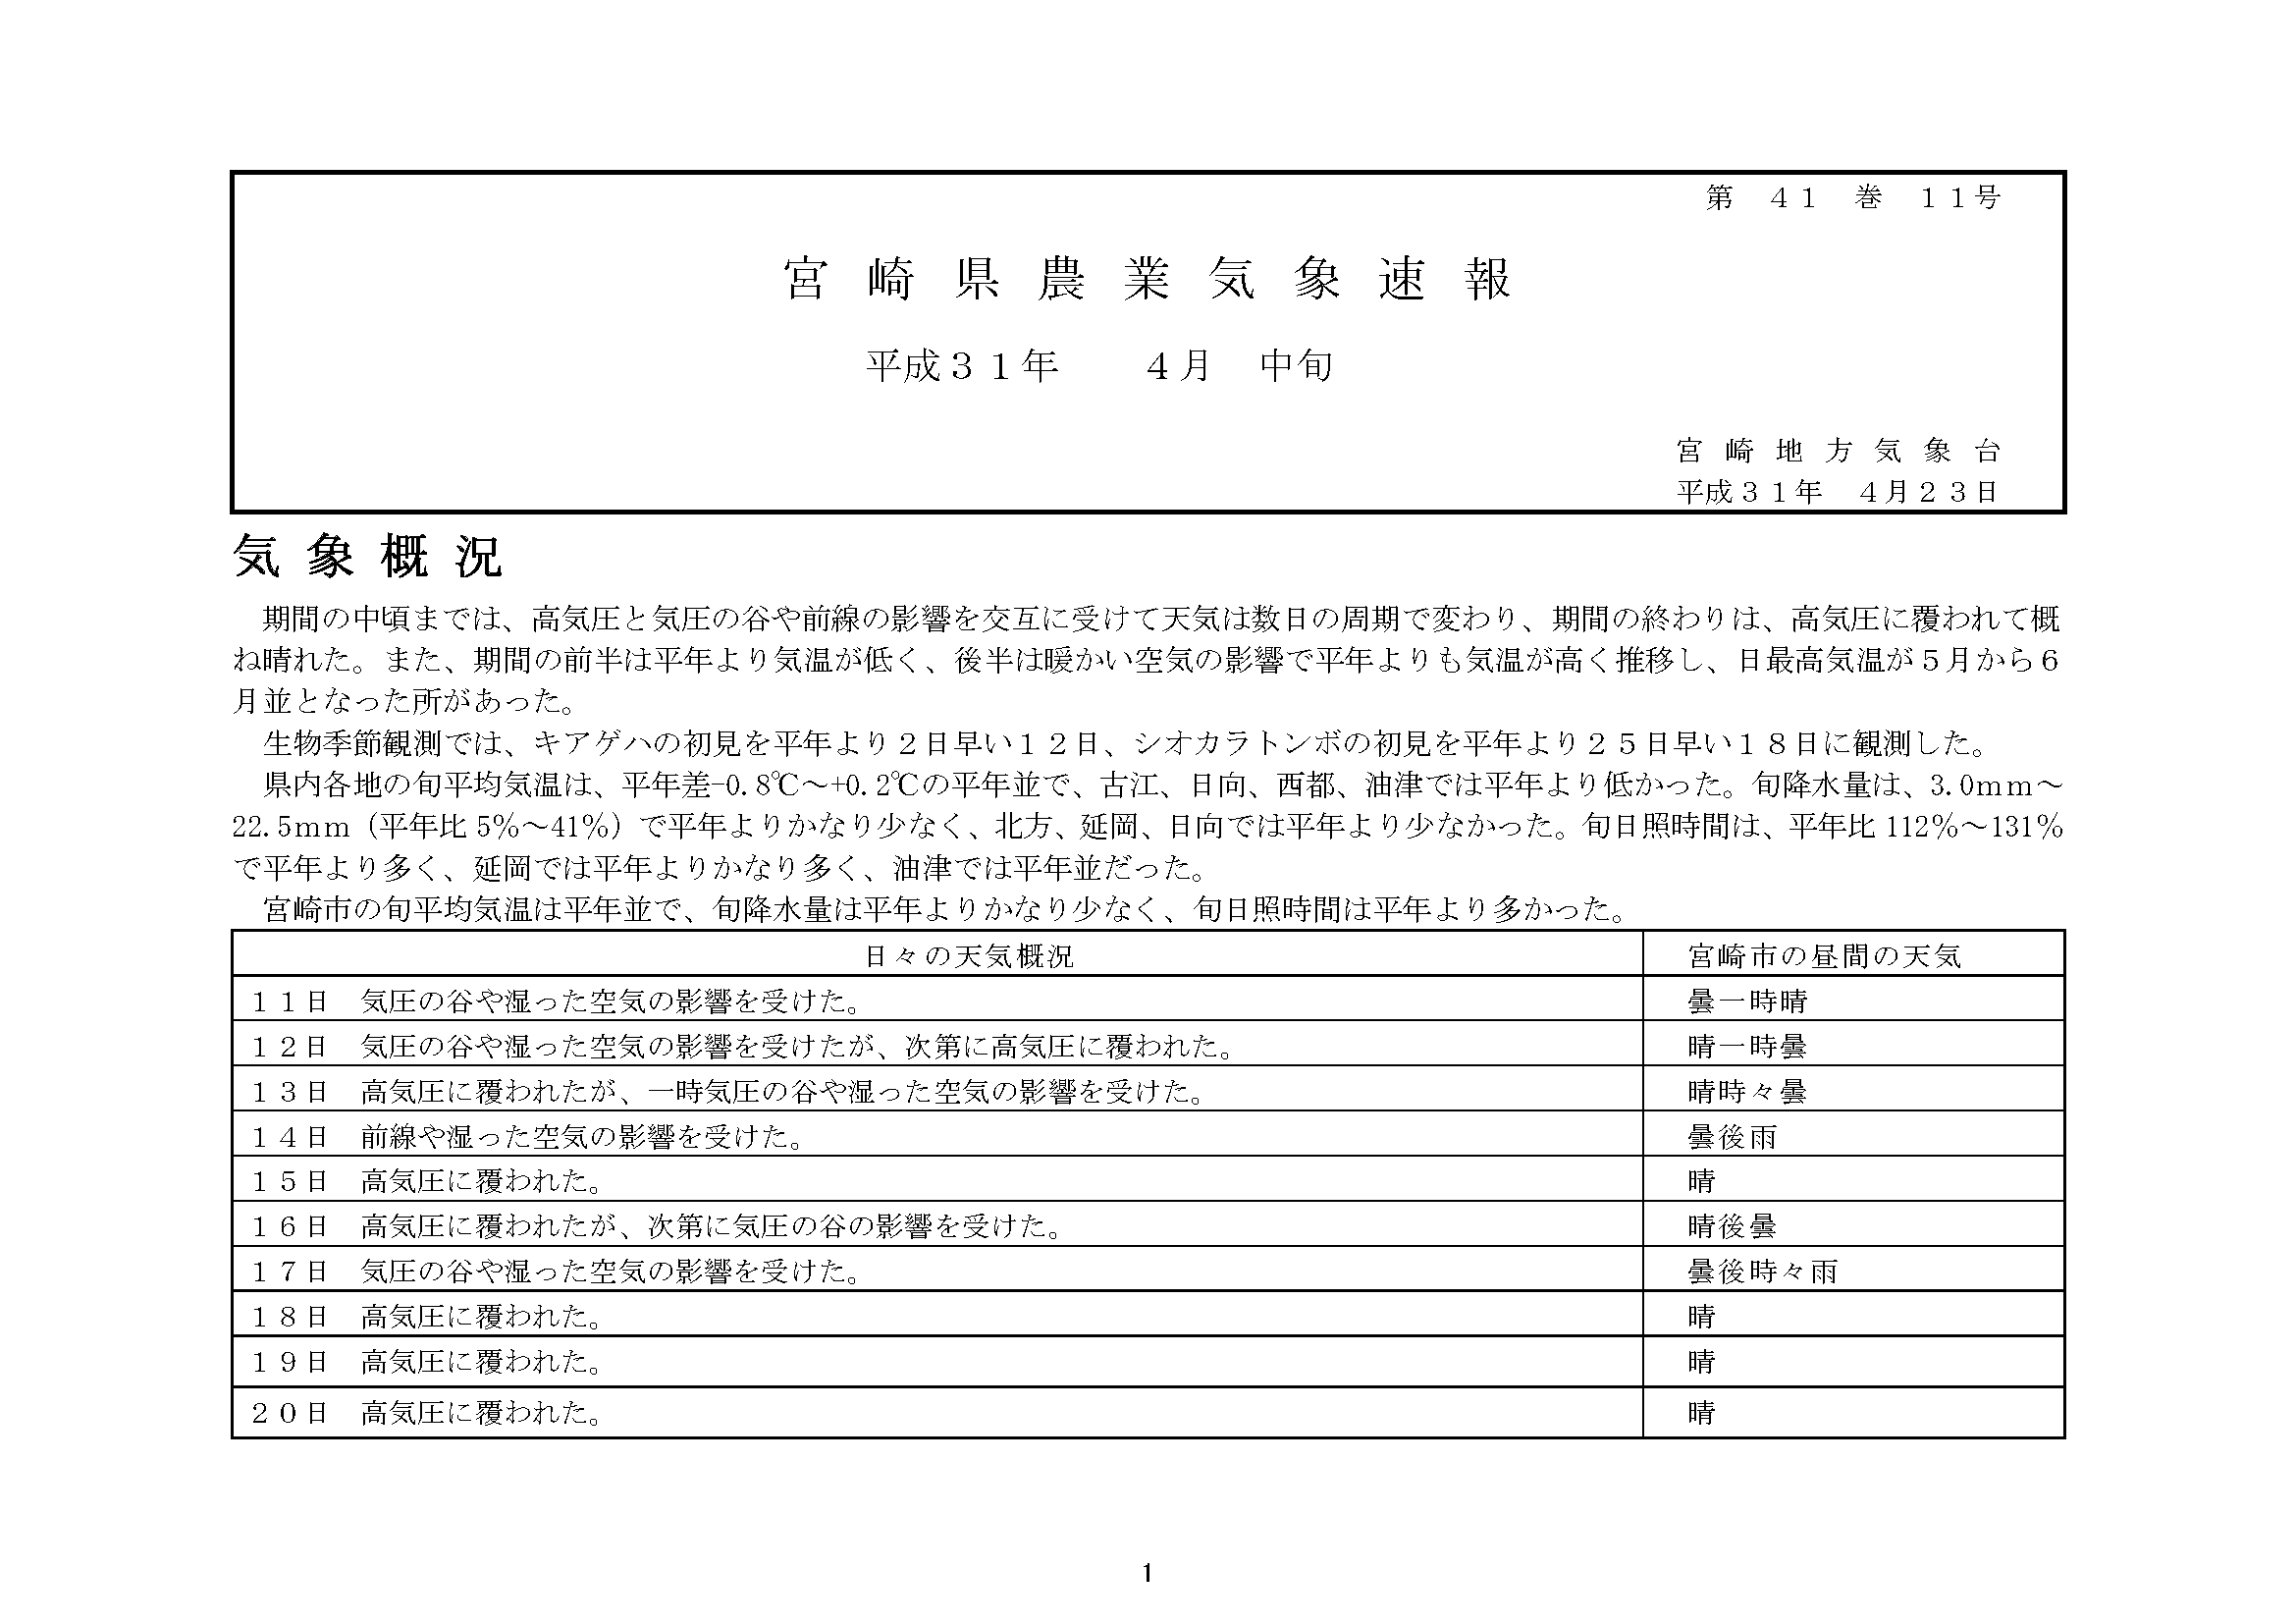 宮崎県農業気象速報平成31年4月中旬PDF